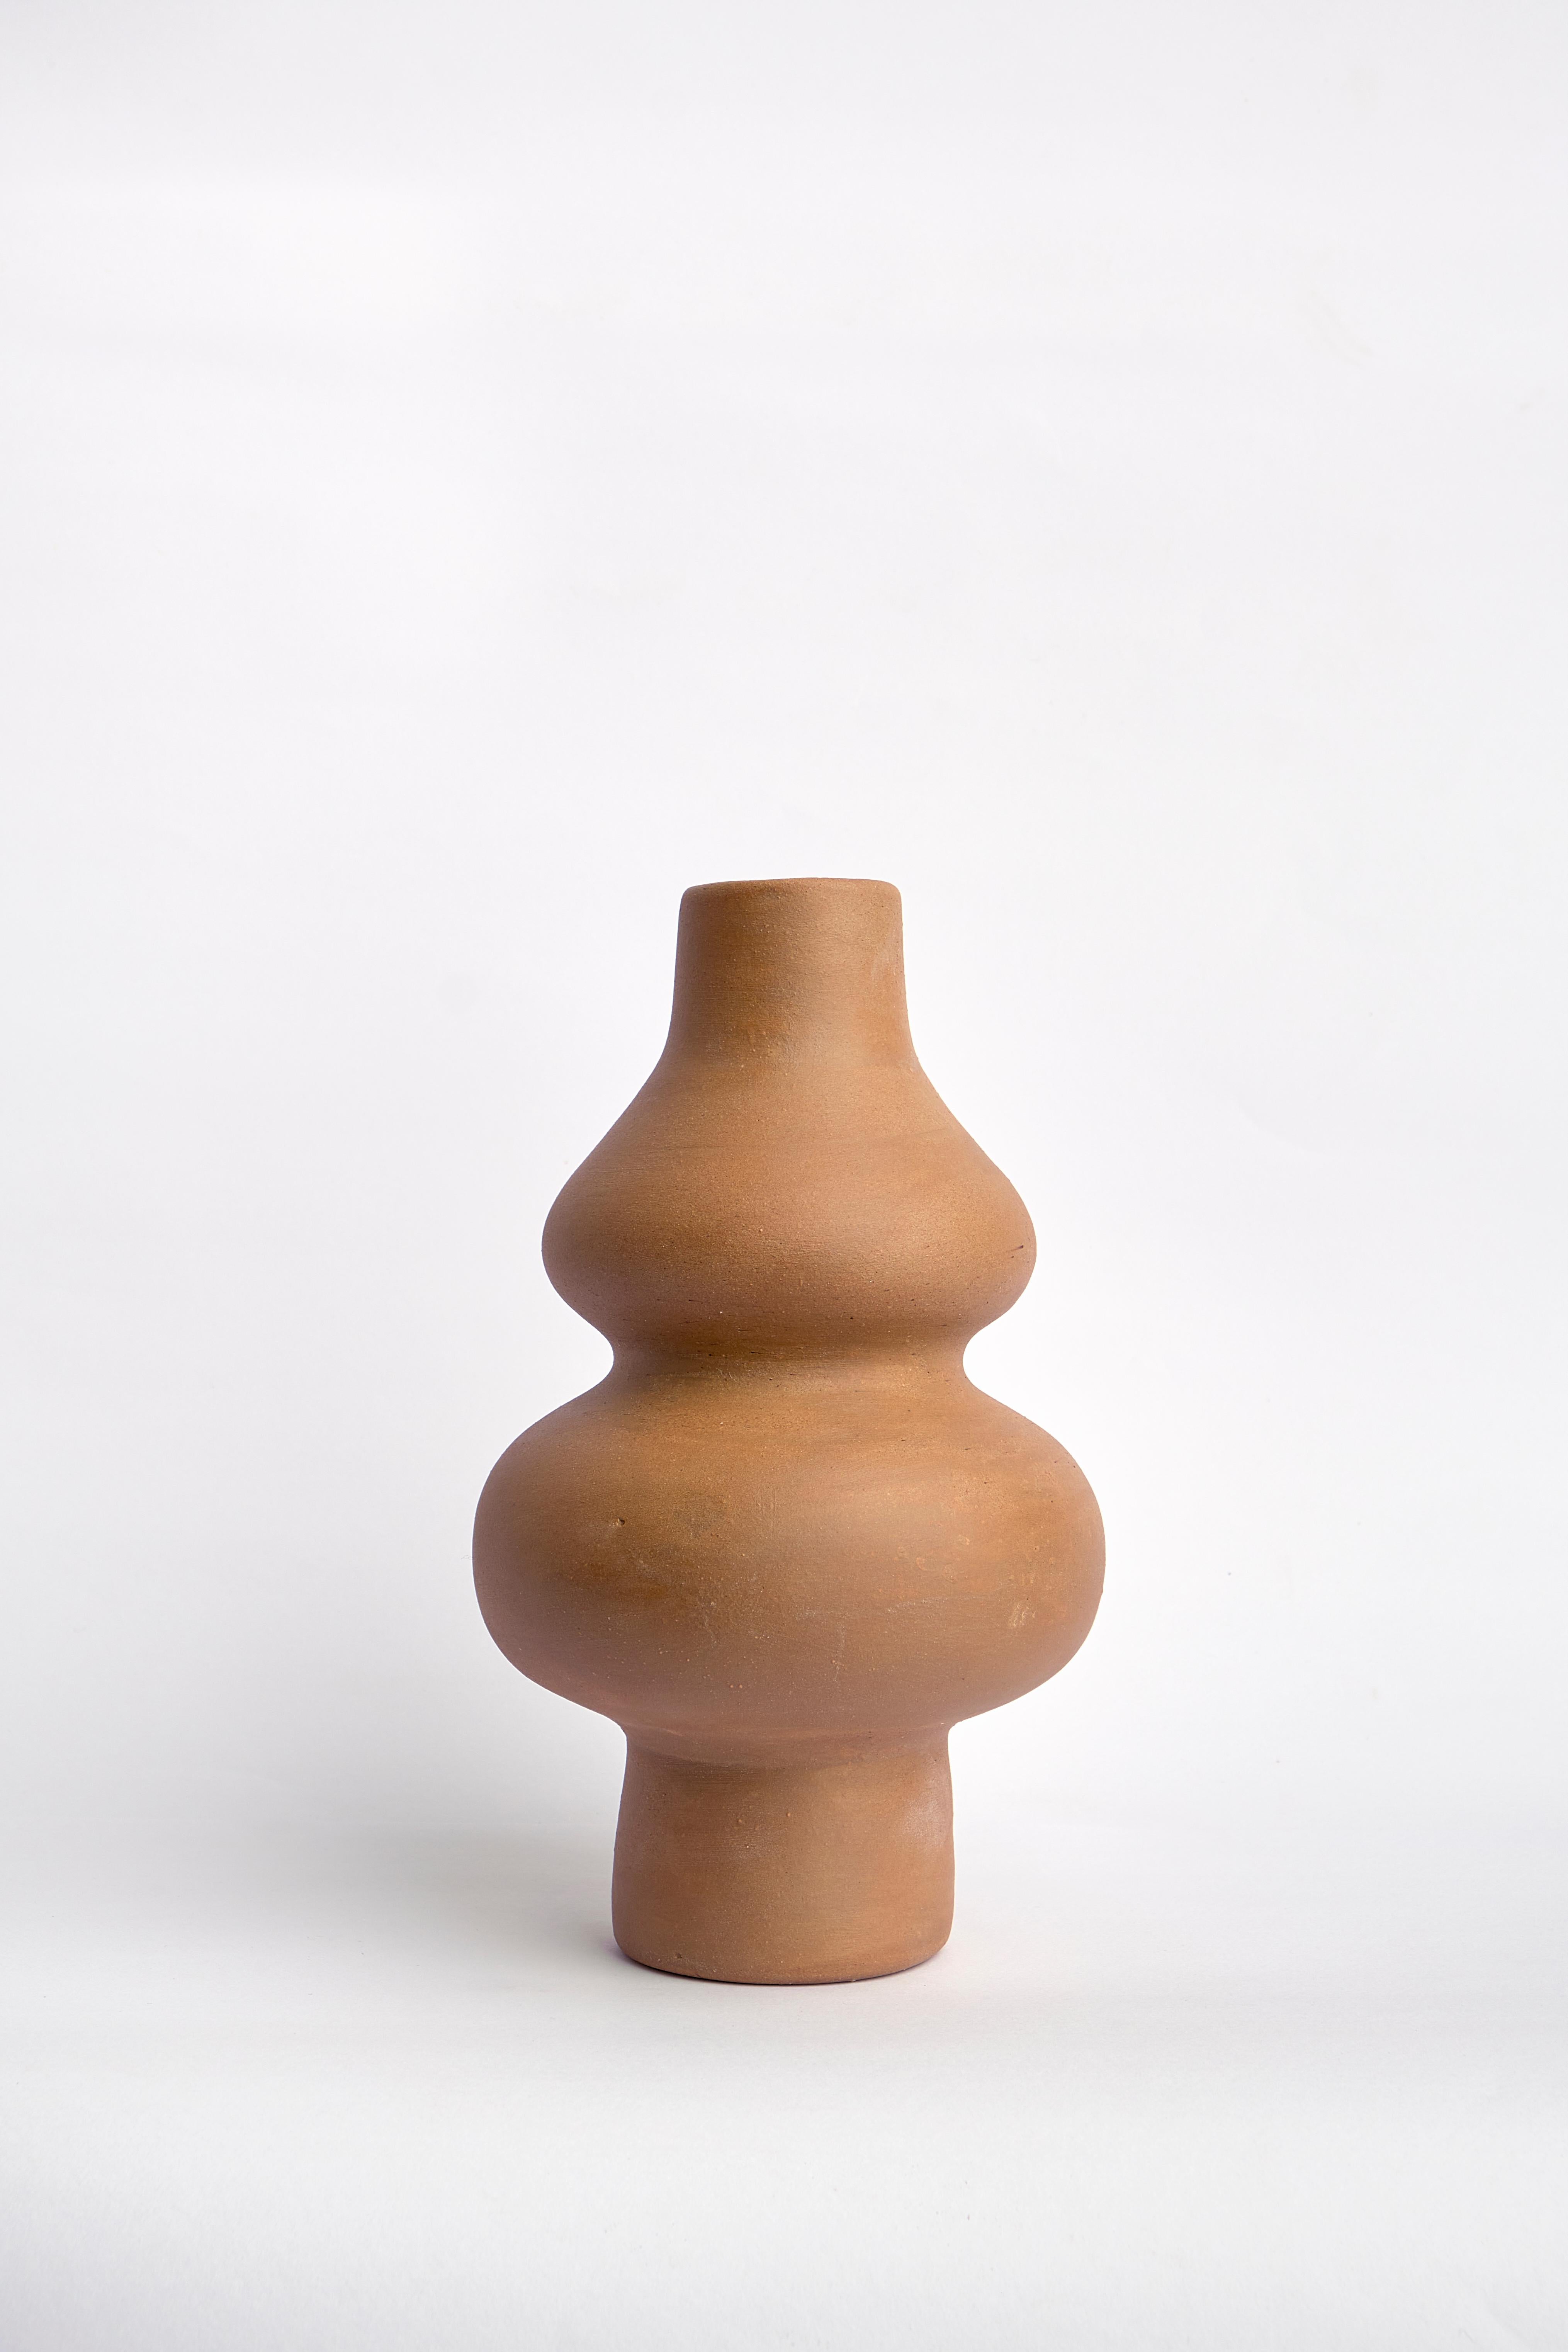 Vase sculptural en céramique de la ligne centrifuge pour la collection permanente.

Les images supplémentaires ne sont que des références pour d'autres possibilités de couleurs : Os blanc, Chocolat, Babeurre, Noir de charbon, Brillant, Bleu